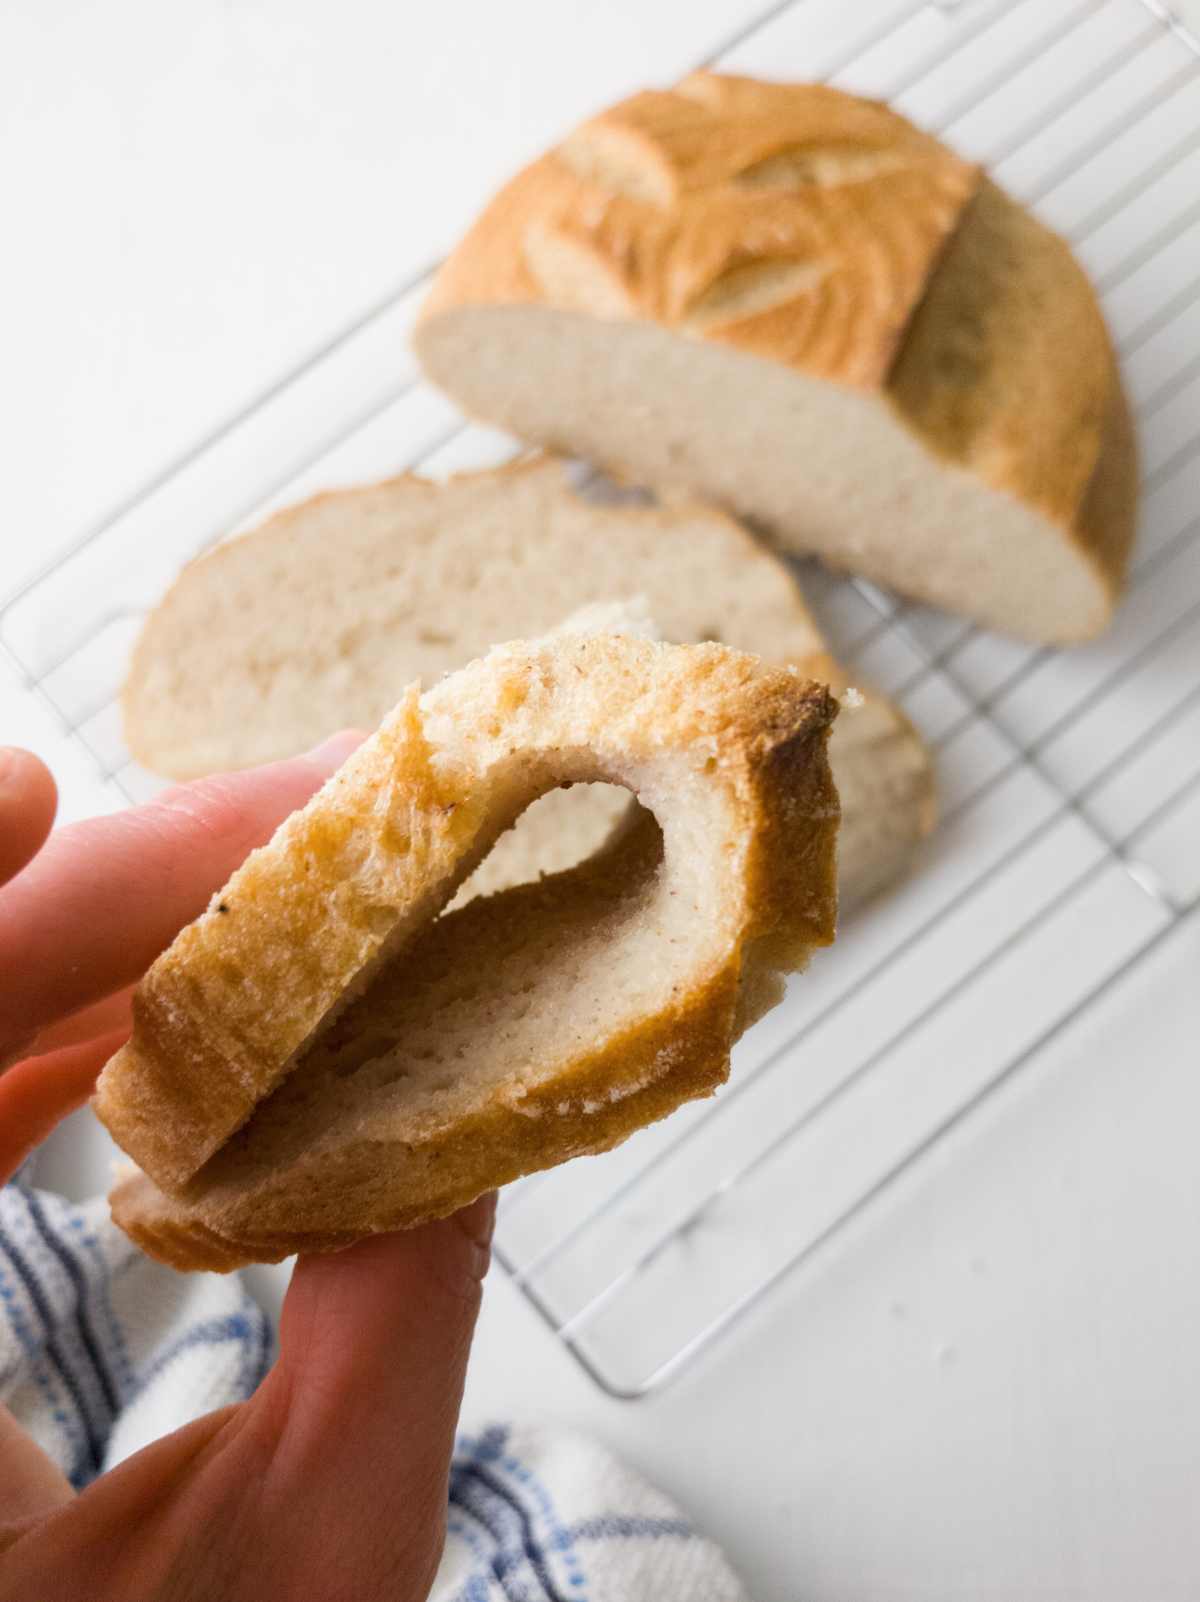 A piece of gluten-free sourdough bread bent.